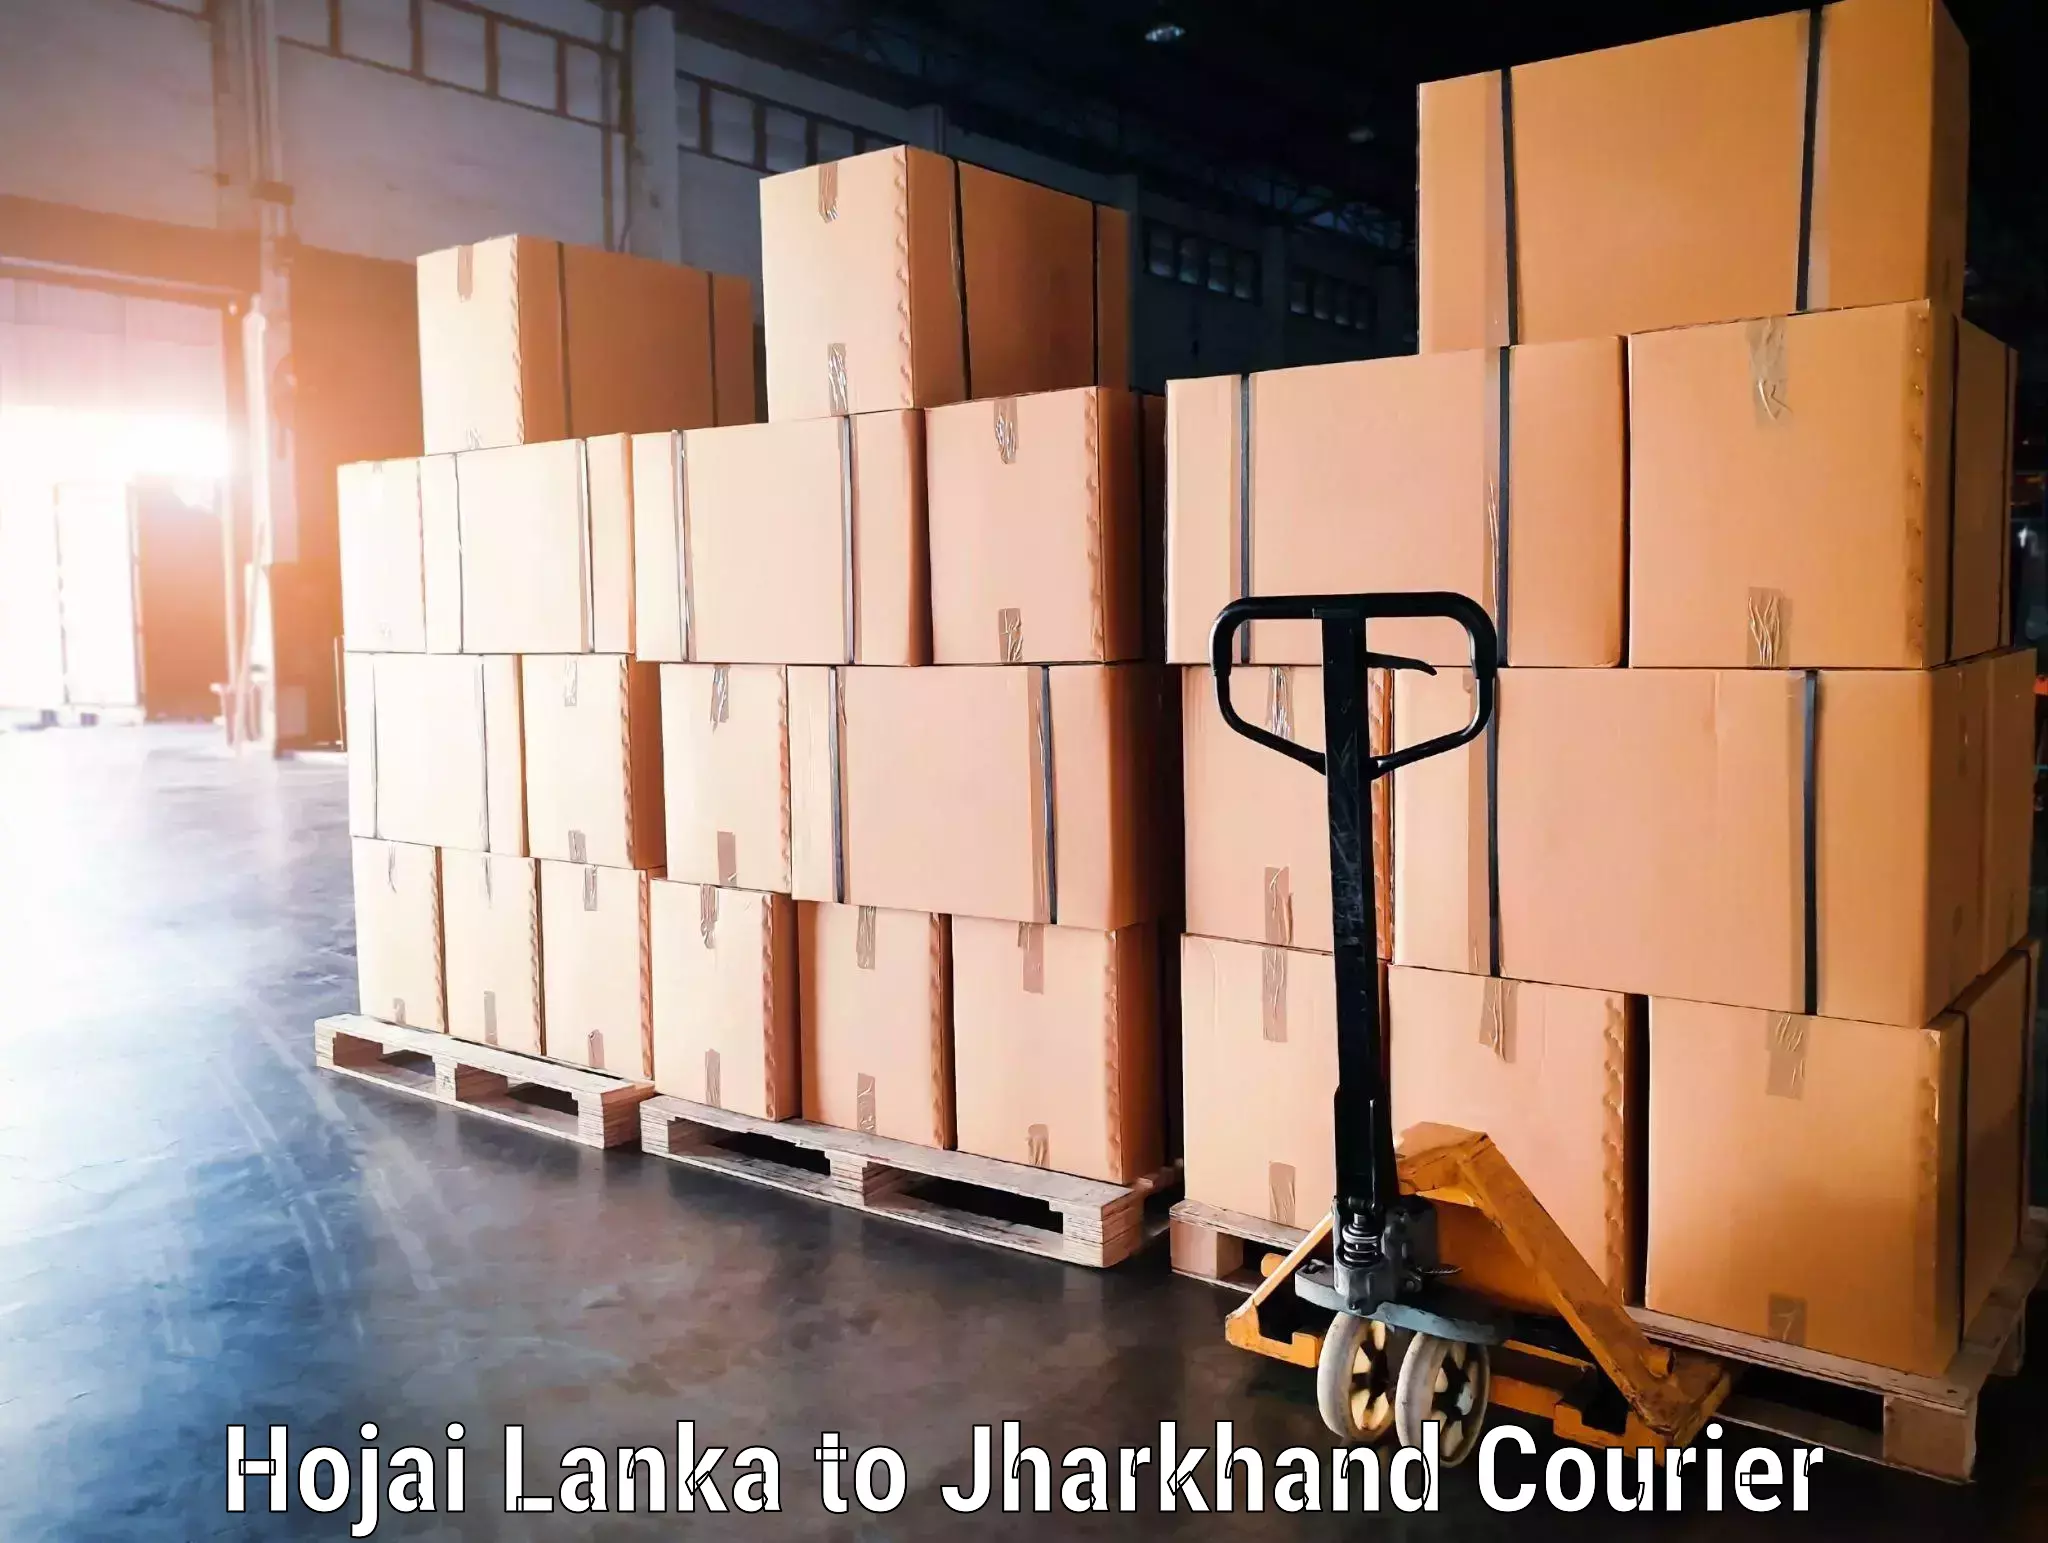 Automated luggage transport Hojai Lanka to Godabar Chatra